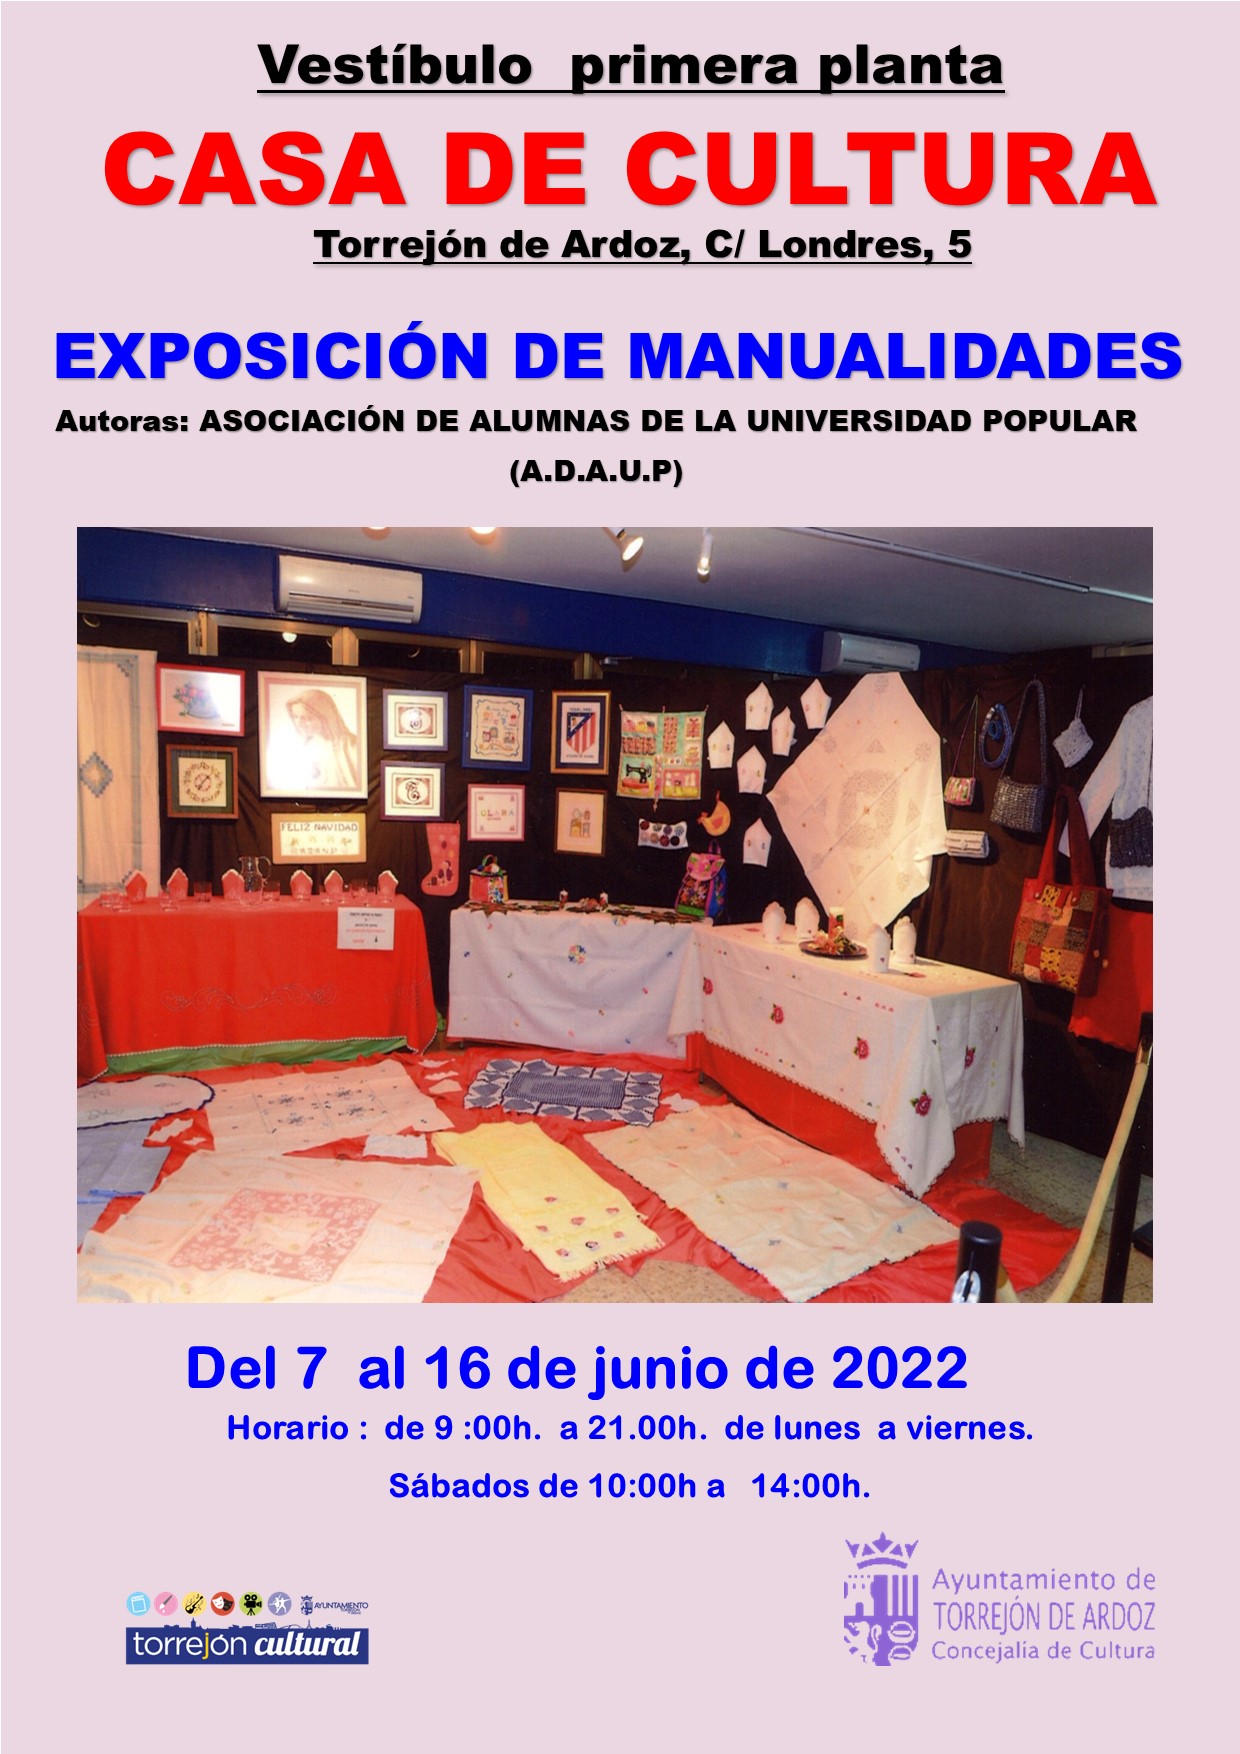 Exposición de manualidades de las Alumnas de la Universidad Popular